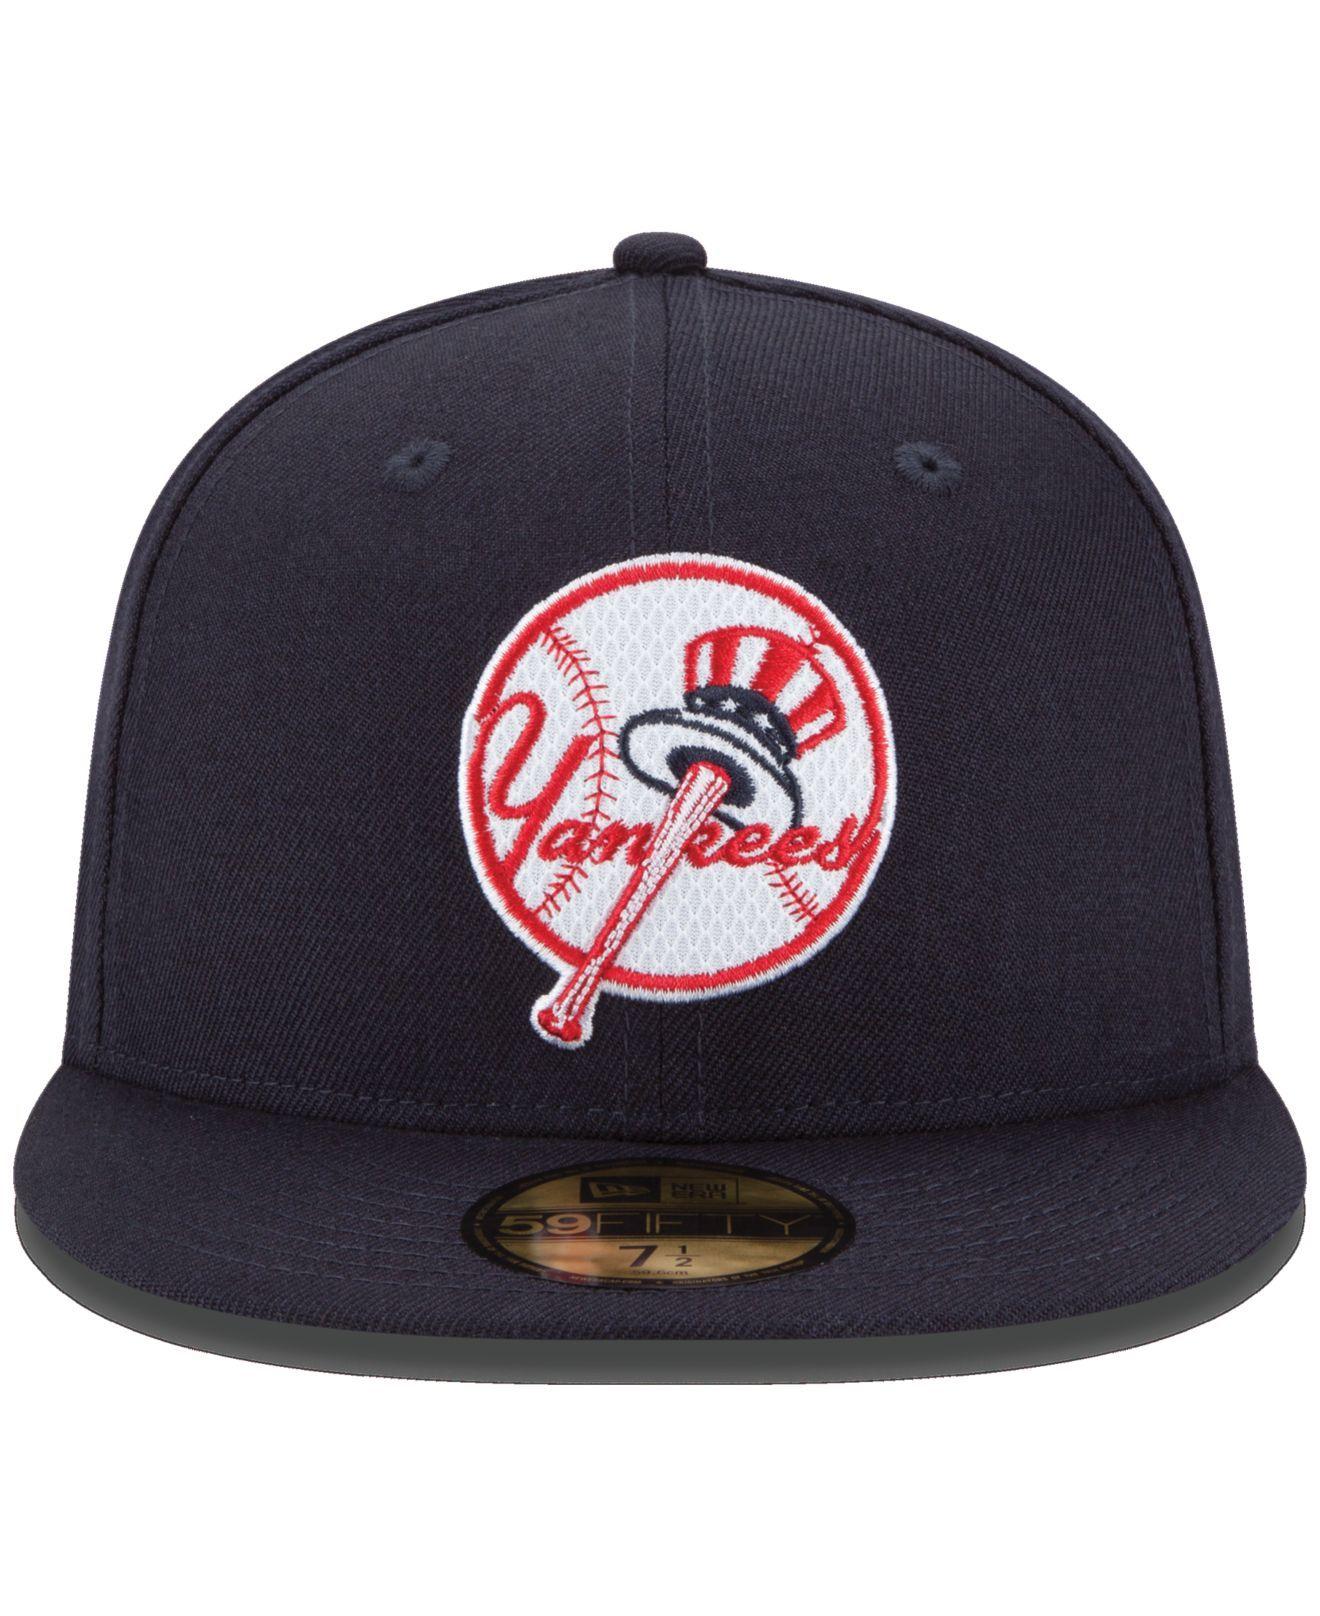 Yankees Cap Logo - cheap for discount 70d48 7d68d yankee logos hat